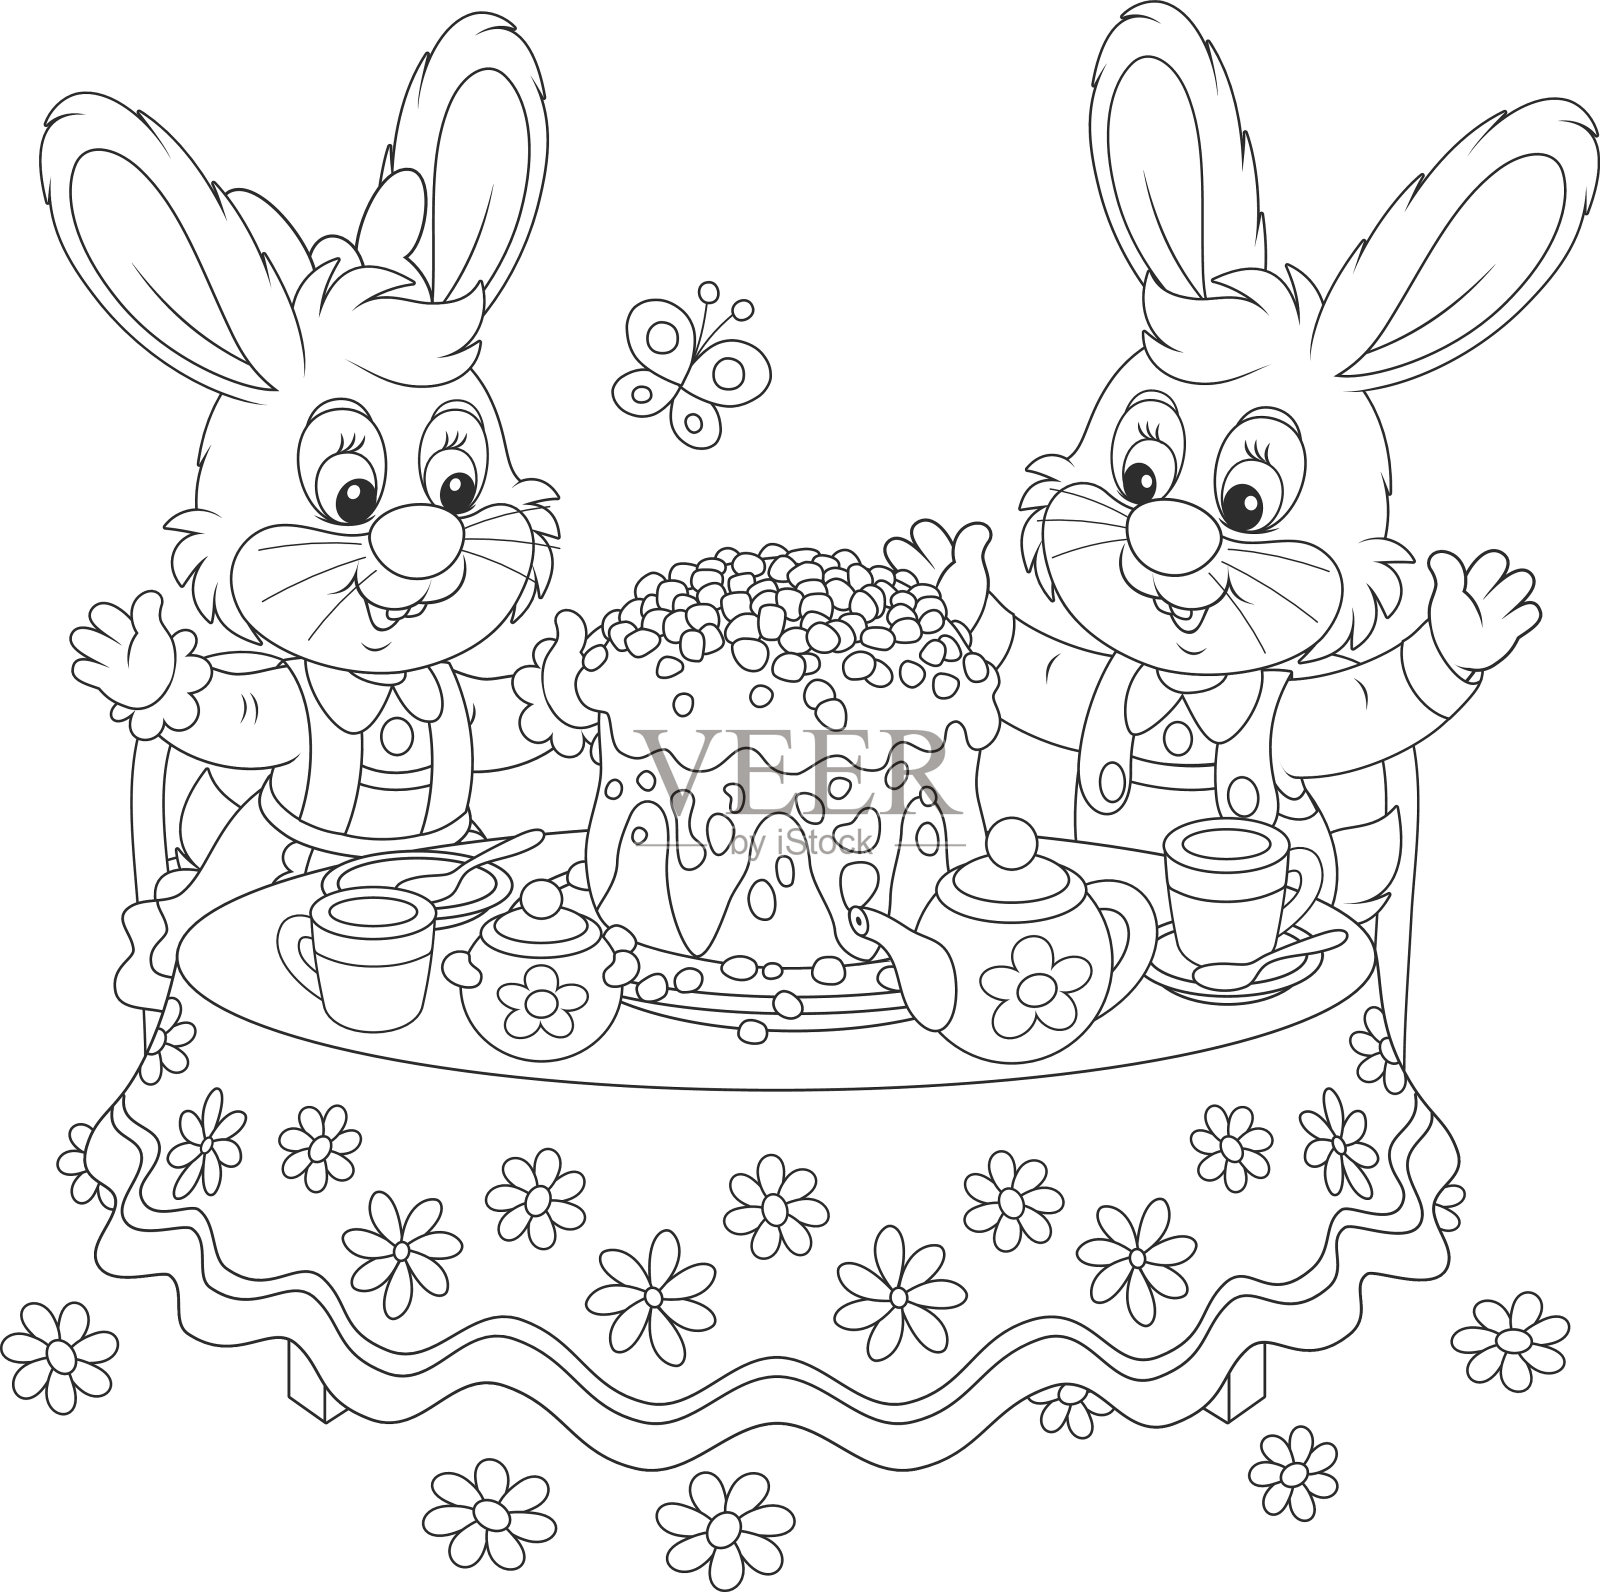 兔子蛋糕#九阳烘焙剧场#的做法_【图解】兔子蛋糕#九阳烘焙剧场#怎么做如何做好吃_兔子蛋糕#九阳烘焙剧场#家常做法大全_美美家的厨房_豆果美食